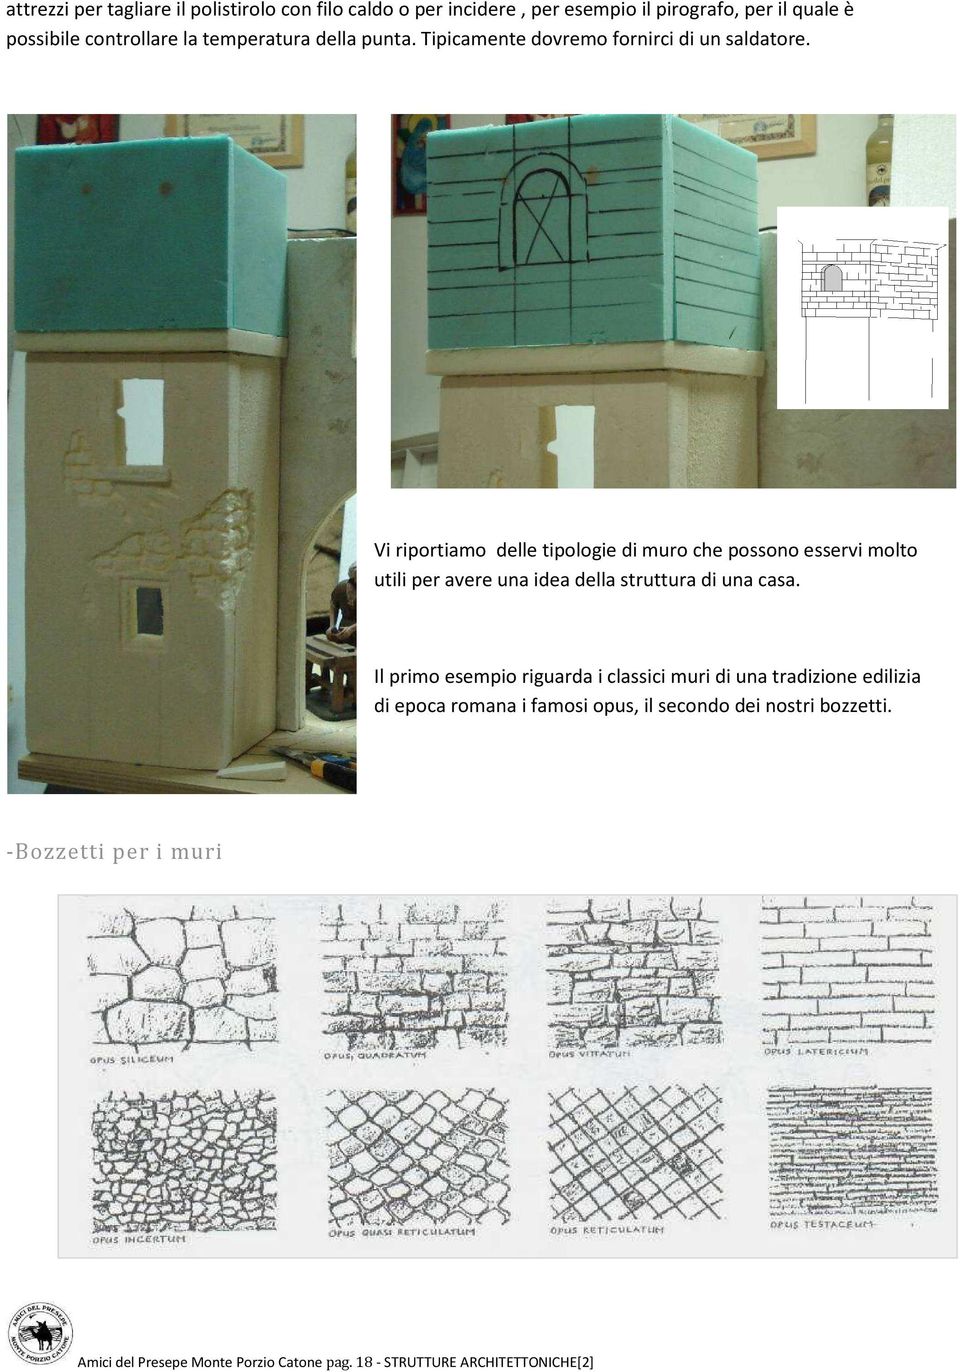 Vi riportiamo delle tipologie di muro che possono esservi molto utili per avere una idea della struttura di una casa.